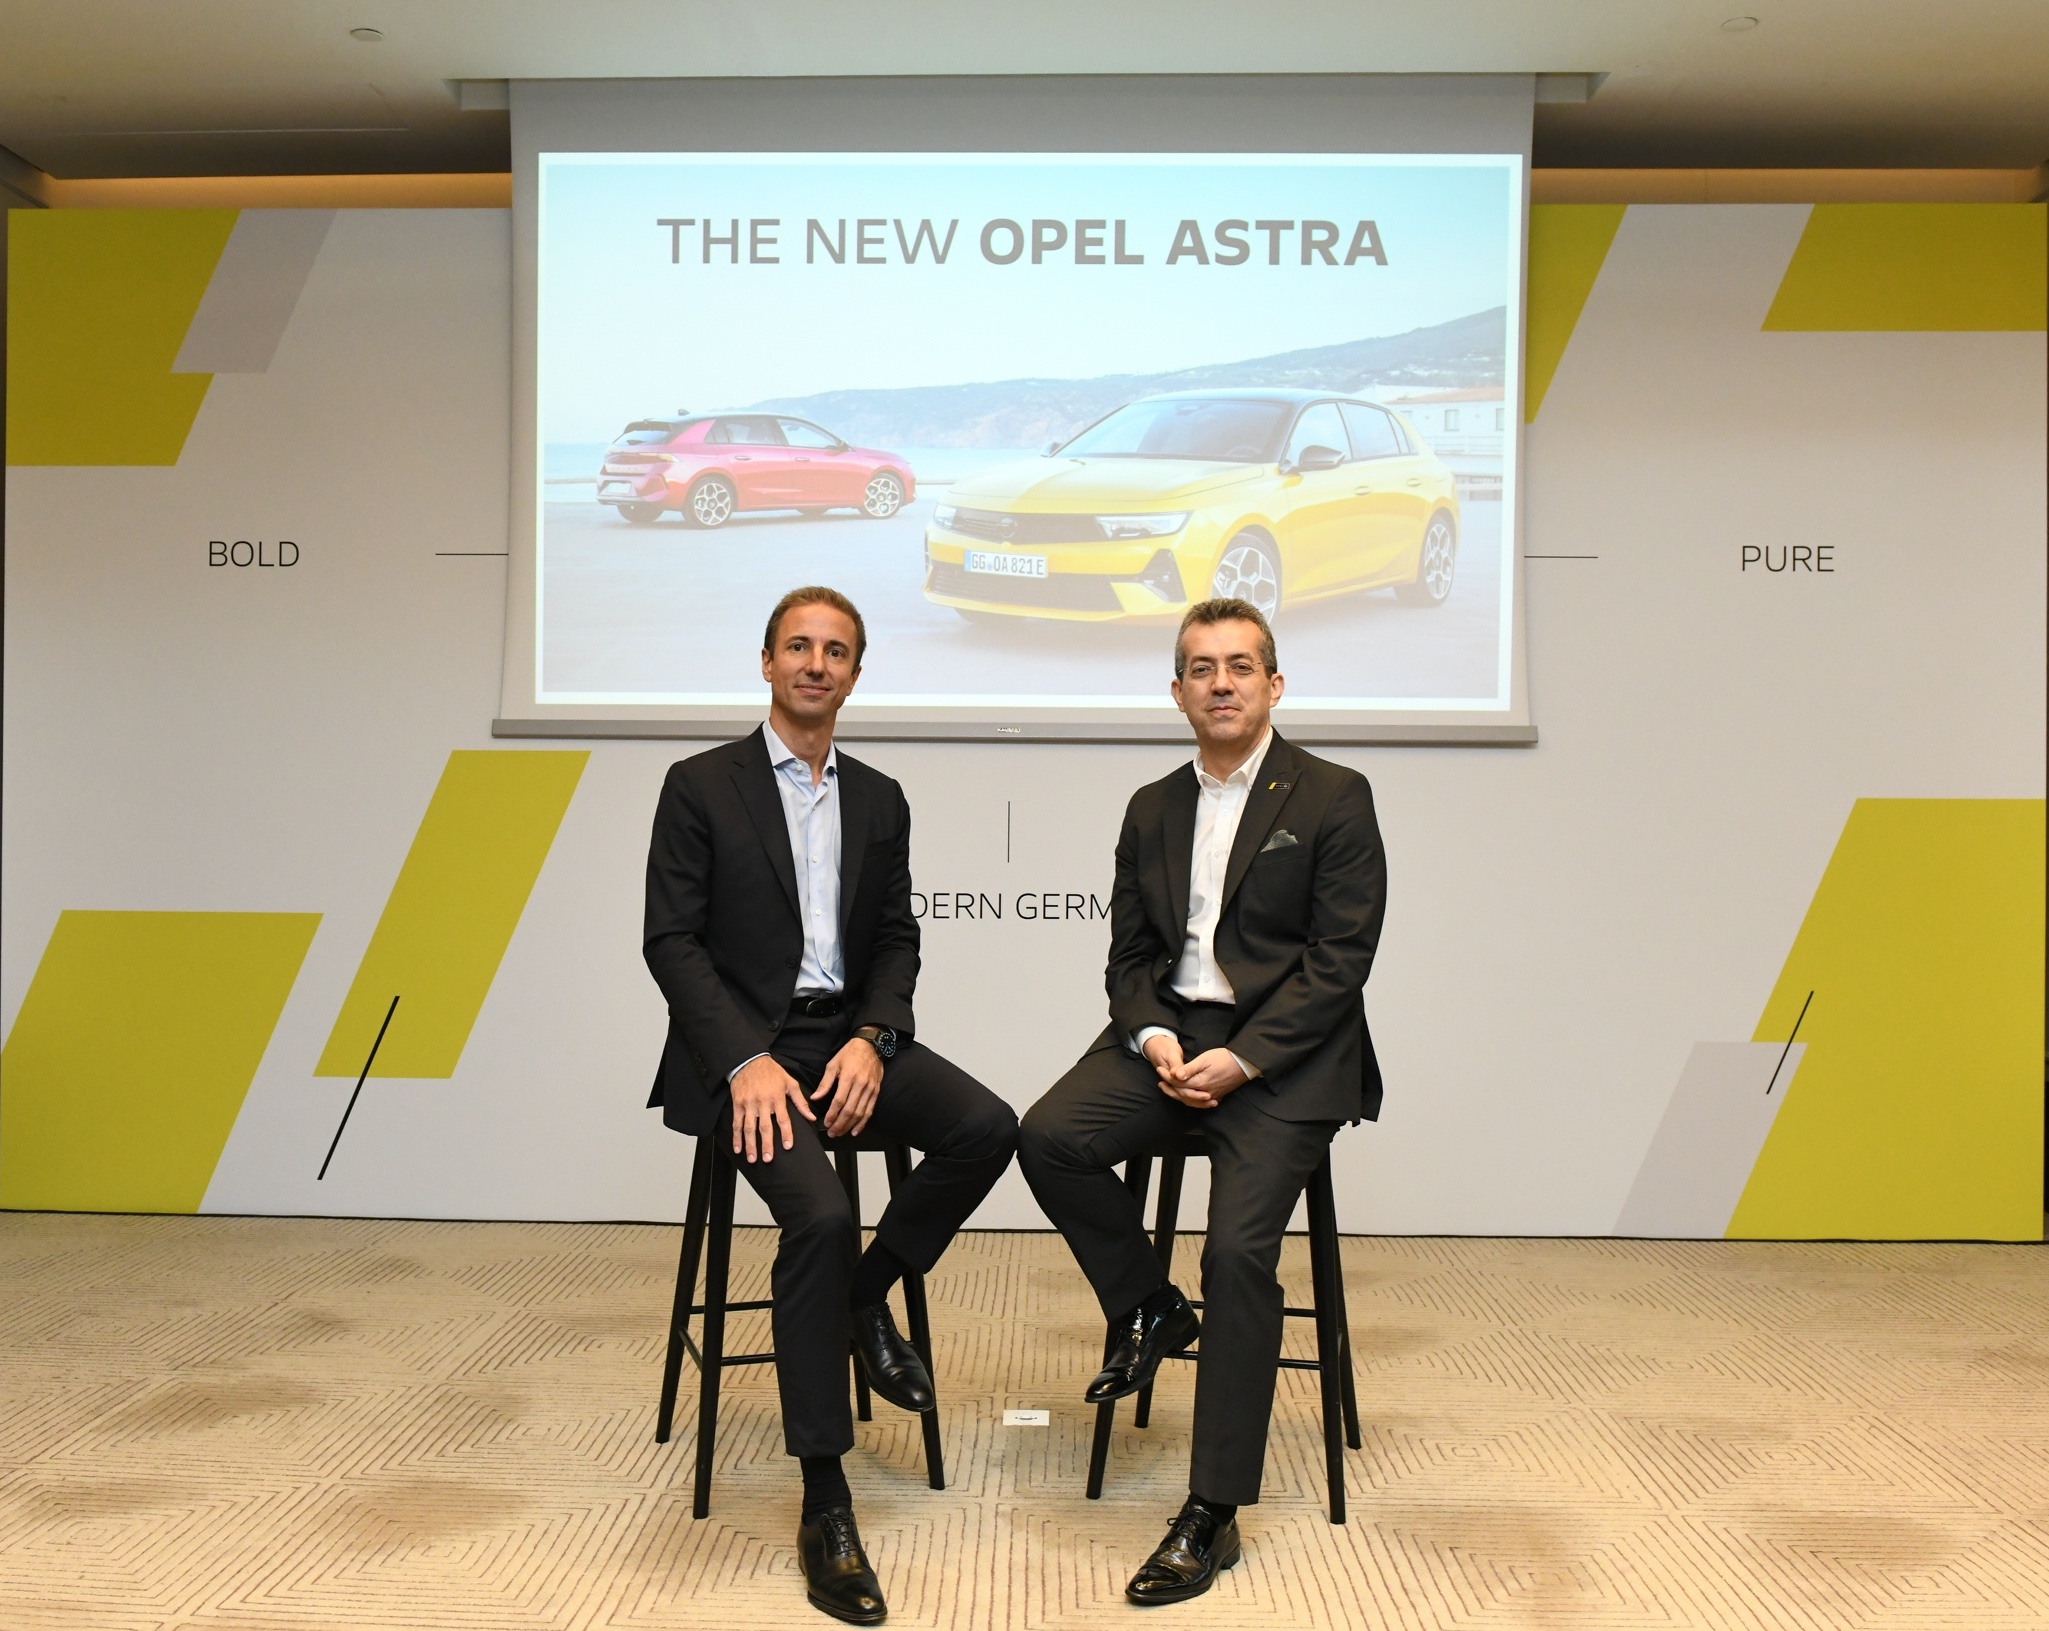 Türkiye, Opel’in 3. ana pazarı